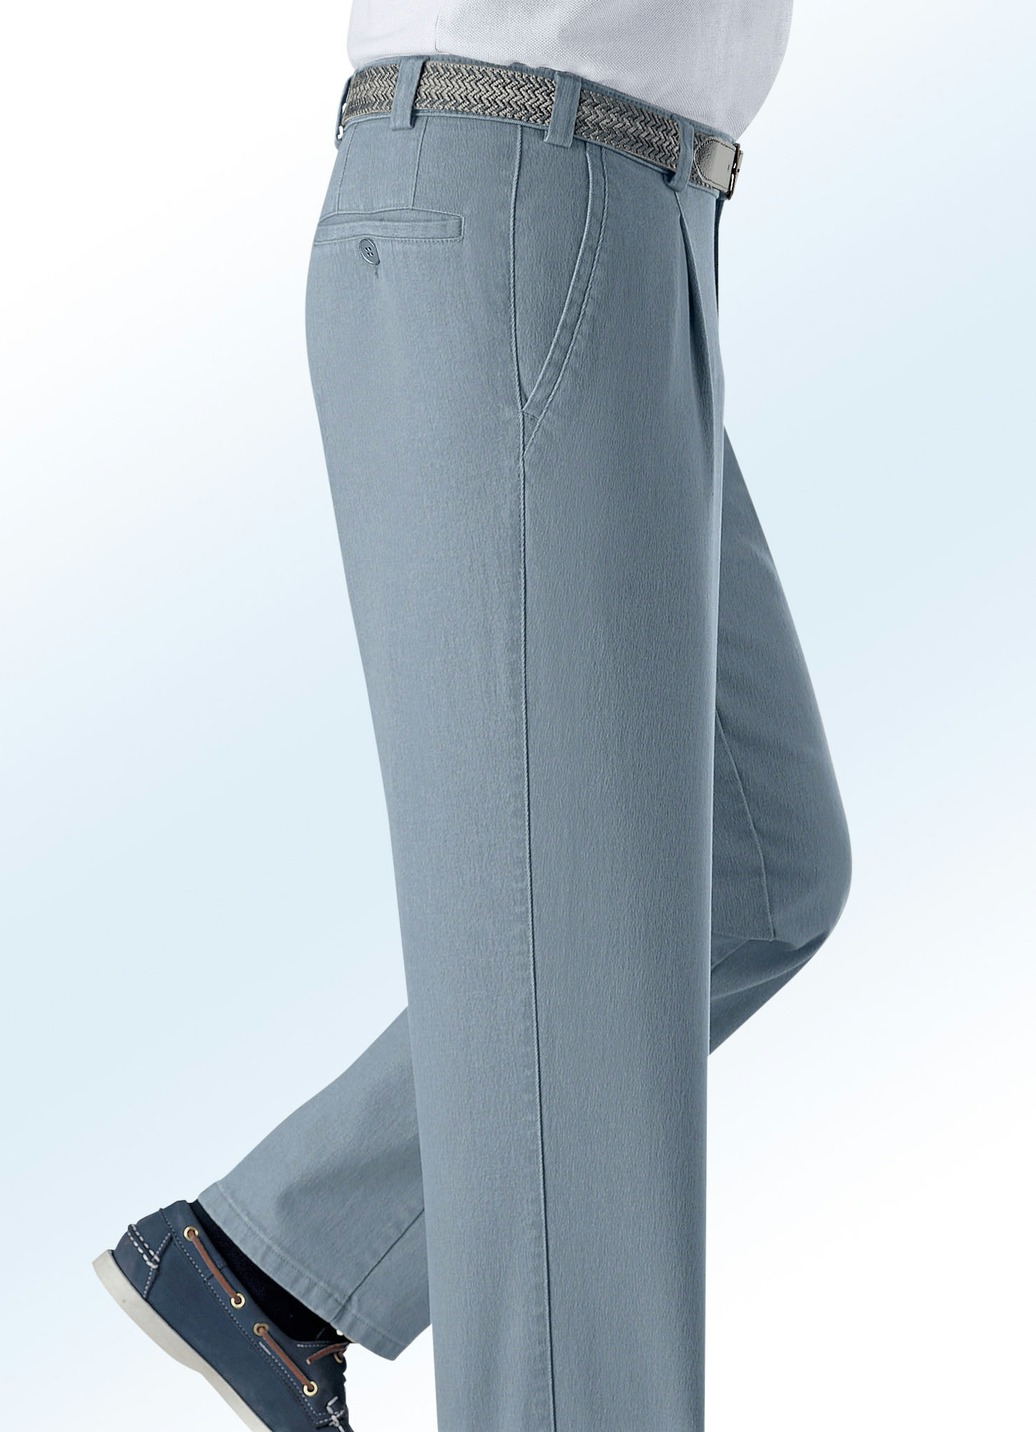 Unterbauch-Jeans mit Gürtel in 3 Farben, Mittelgrau, Größe 58 von BADER